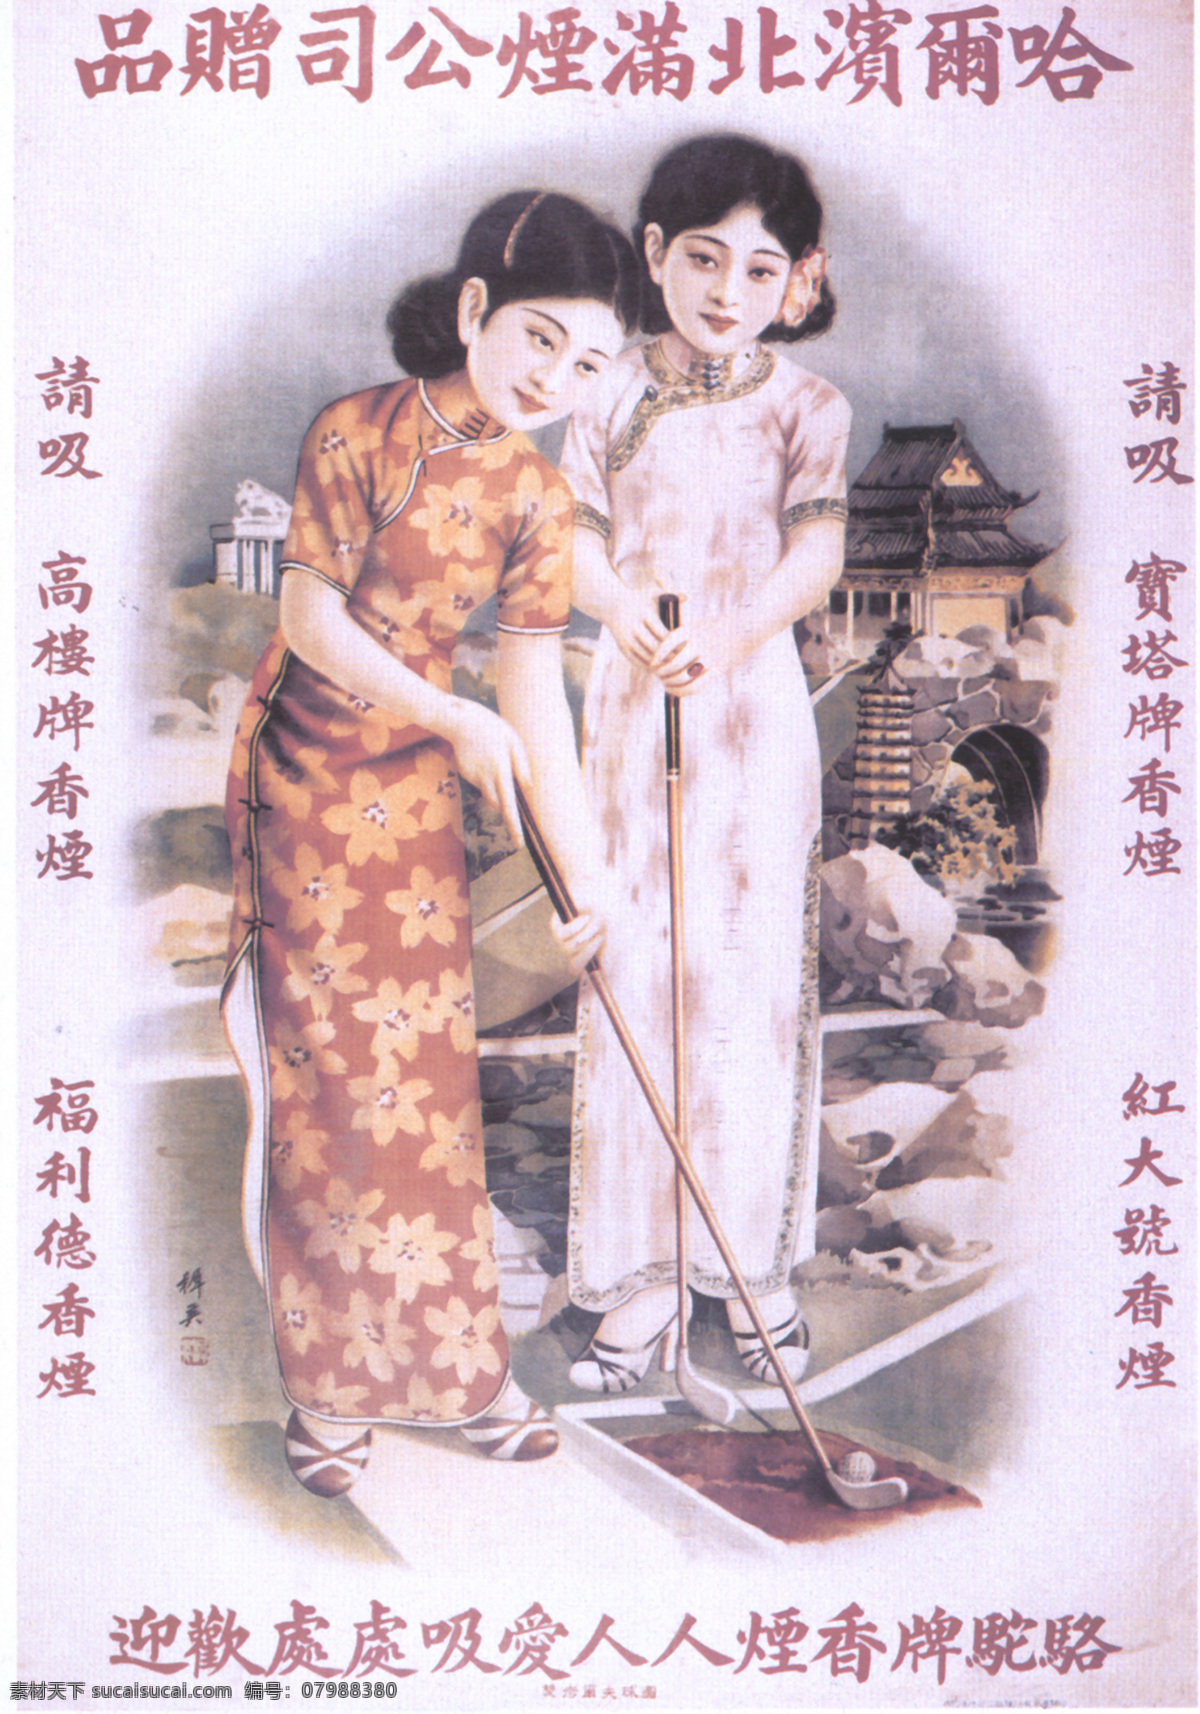 老 上海 月份 牌 广告 老广告 老上海 月份牌 大美女 香烟 月历 文化艺术 绘画书法 设计图库